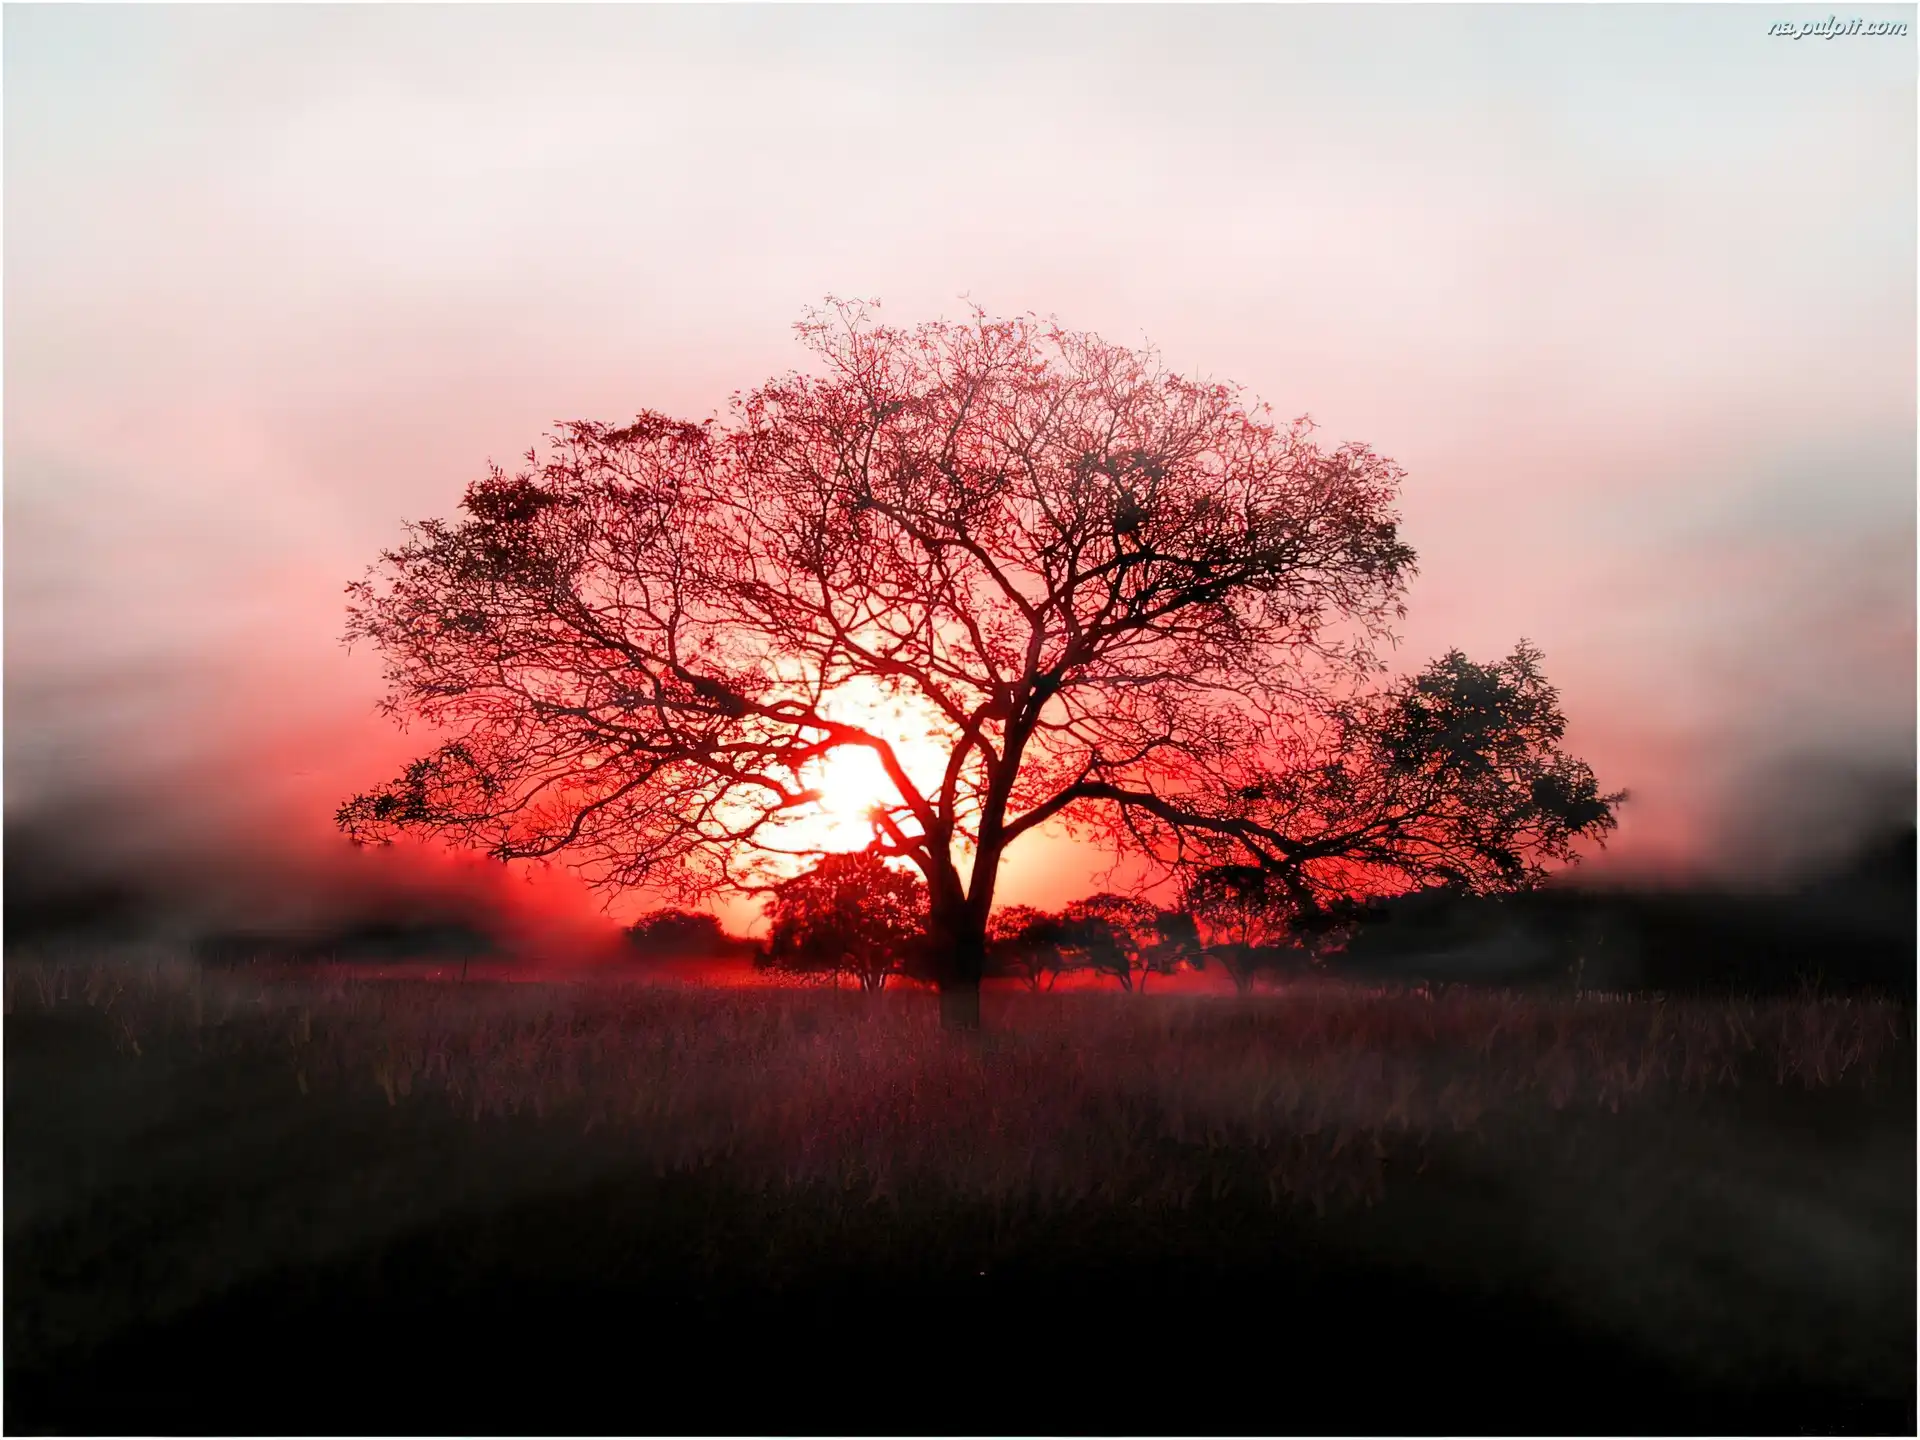 Drzewo, Czerwone, Słońce